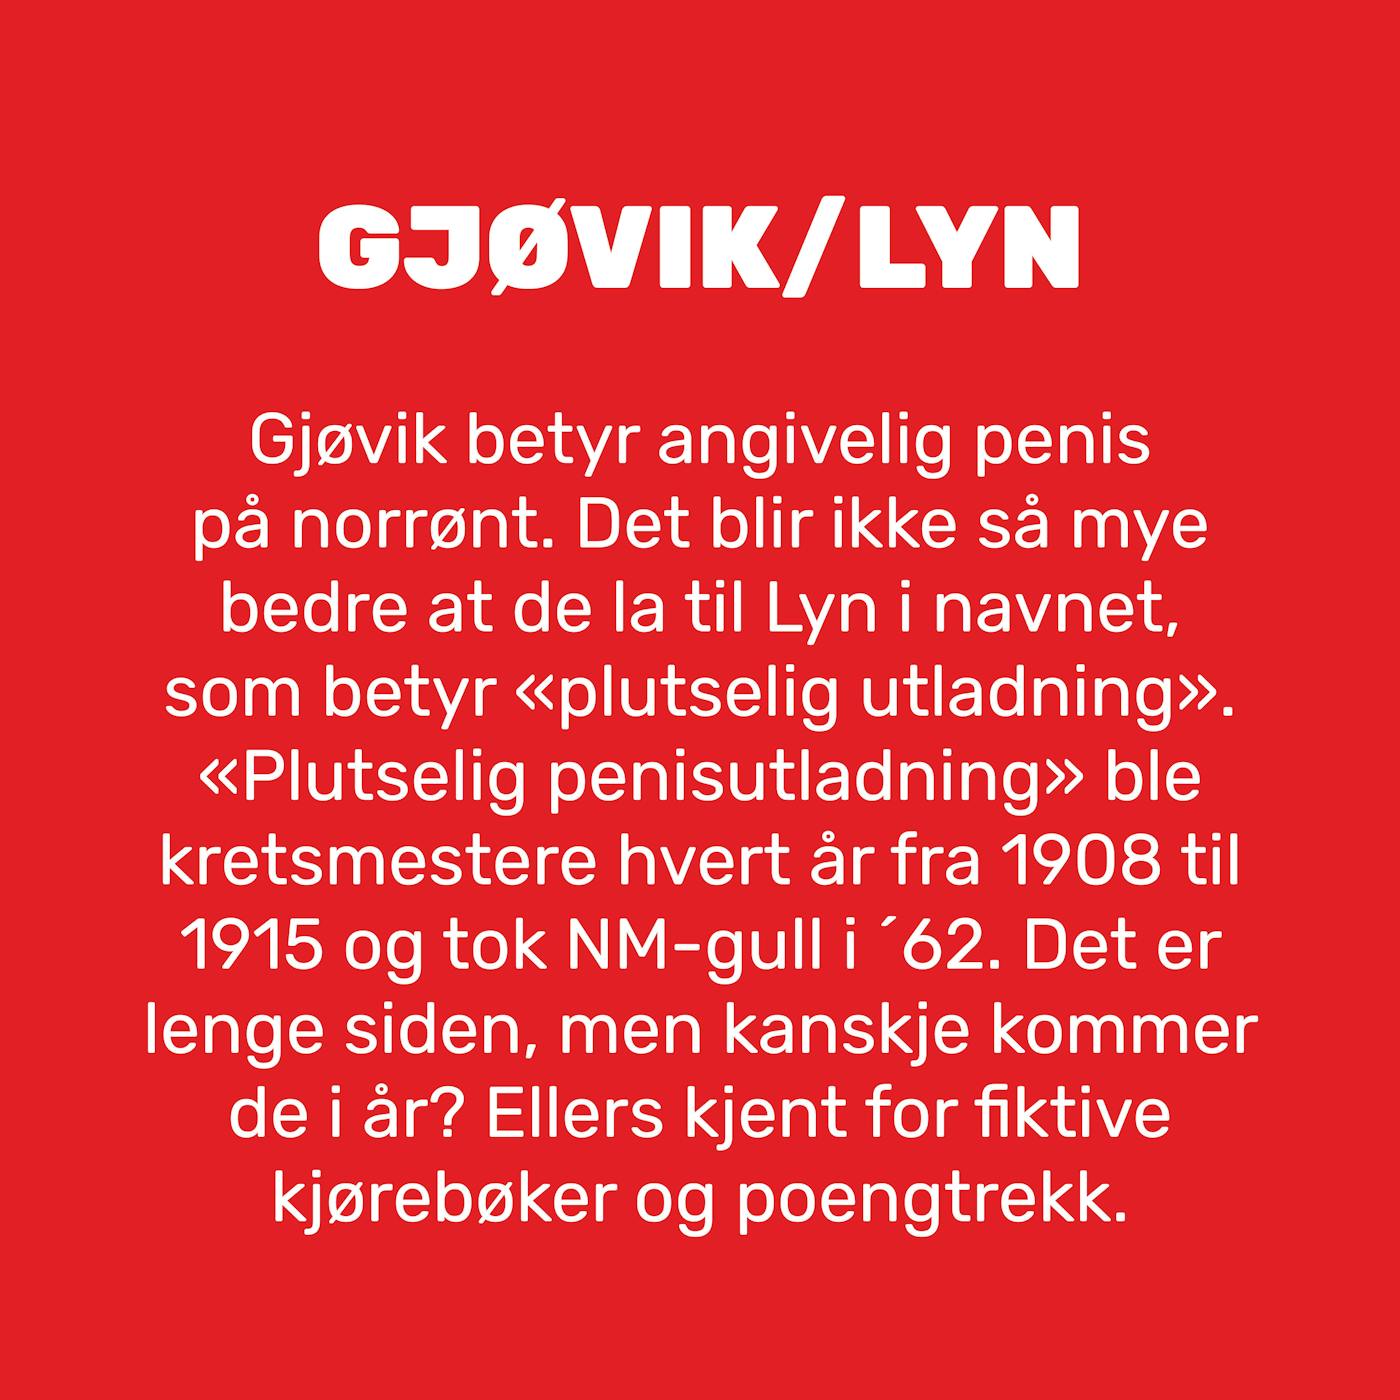 1 Gjøvik Lyn